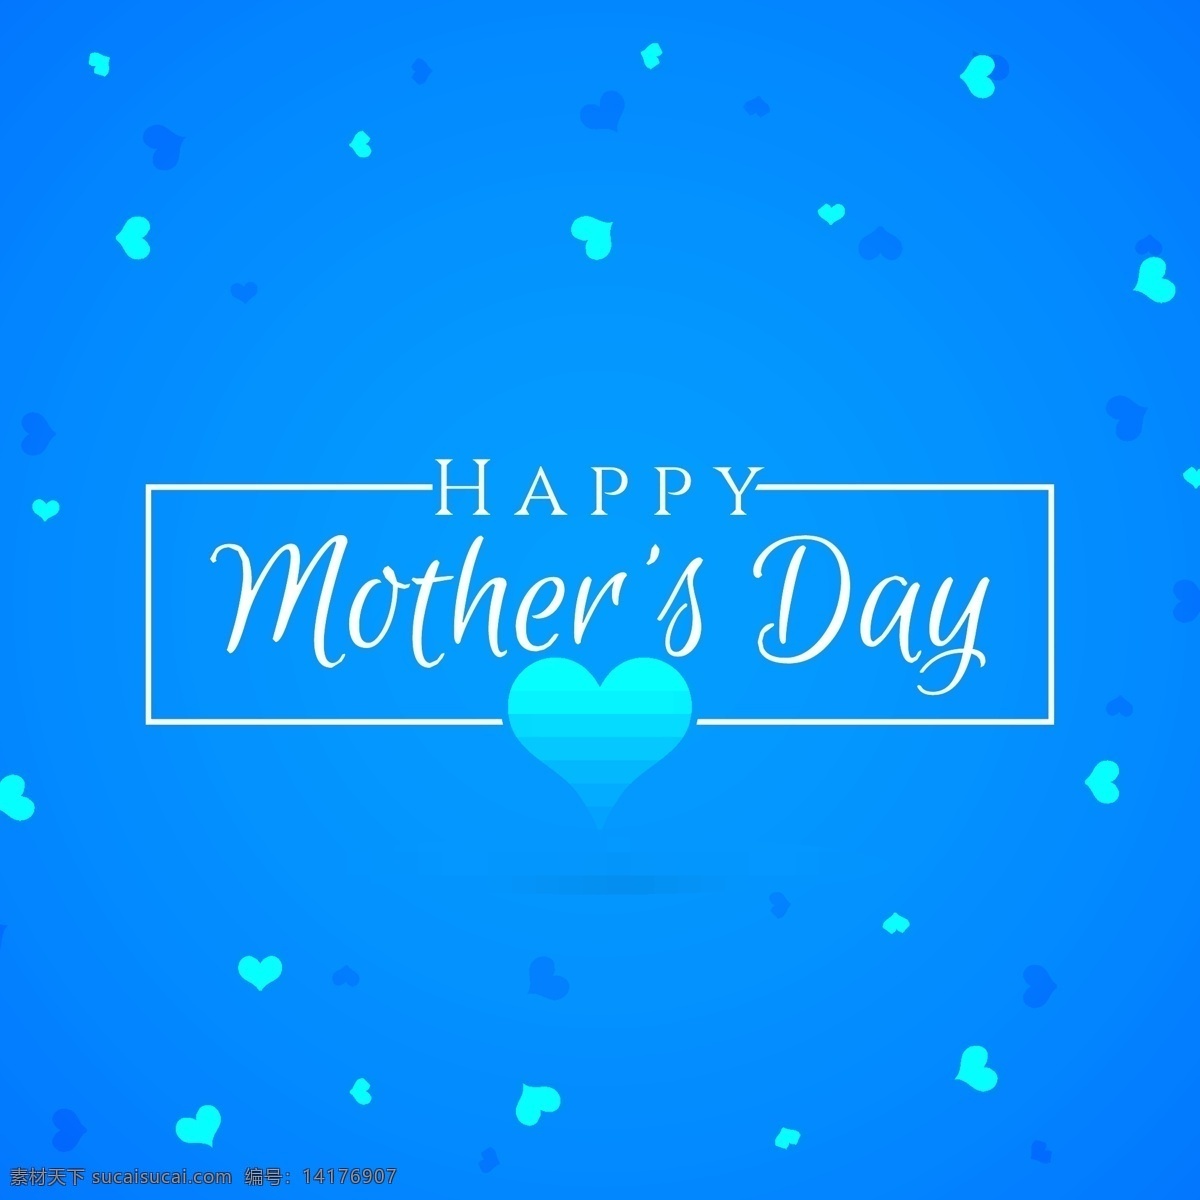 母亲节 快乐 心形 图案 蓝色 背景 母亲节快乐 心形图案 蓝色背景